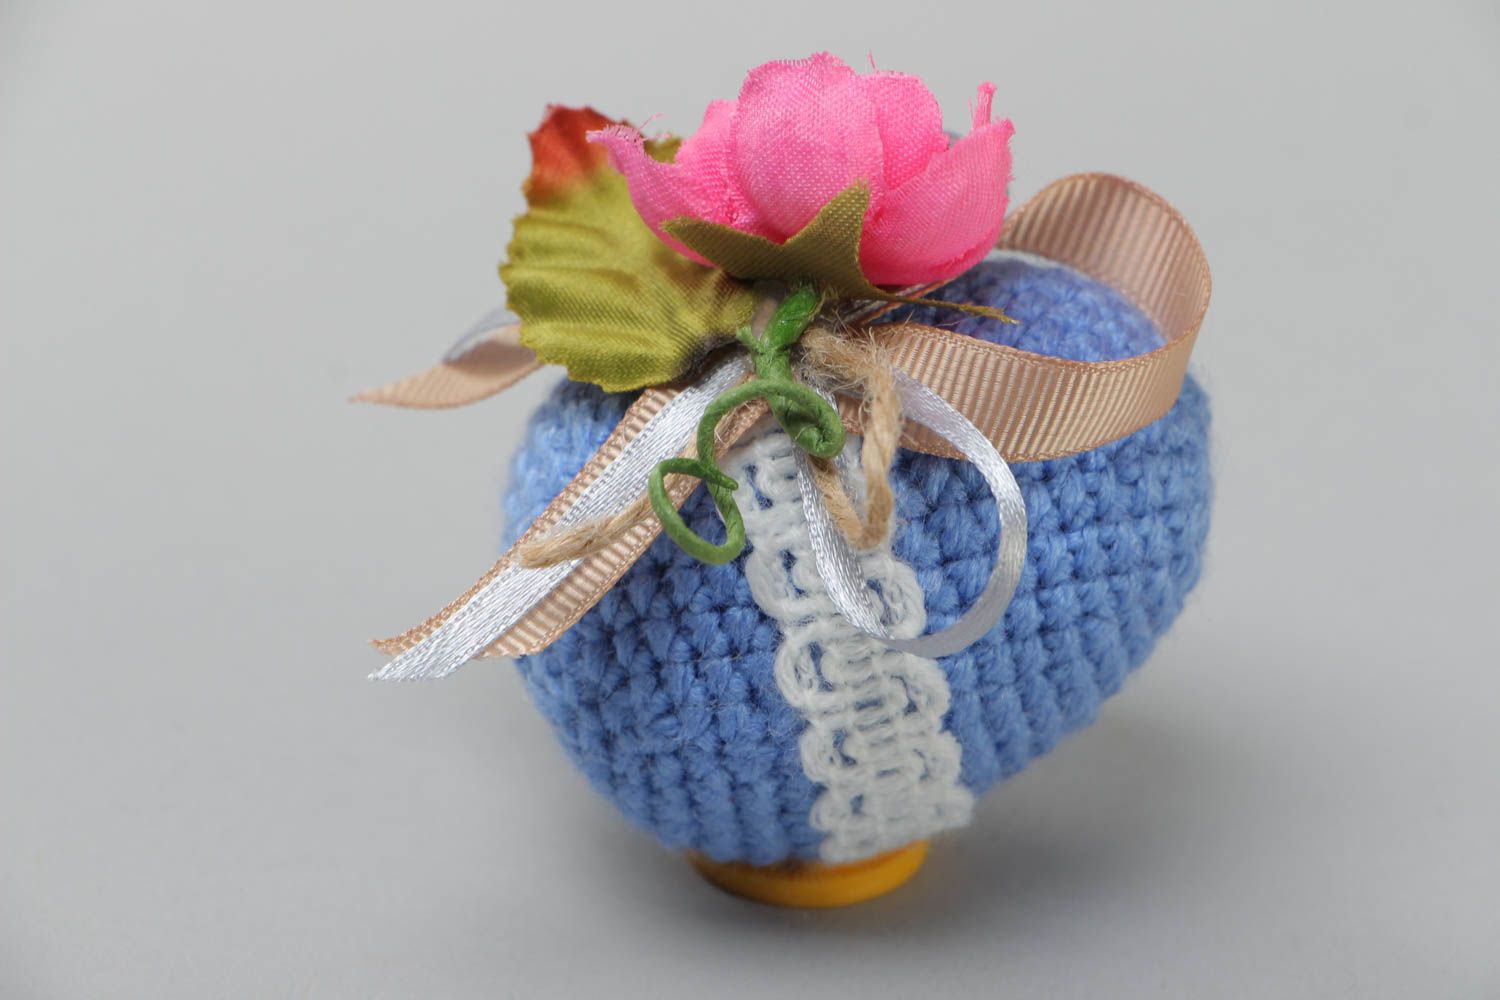 Яйцо связанное крючком из акрила с цветами мягкое интерьерное ручной работы фото 4